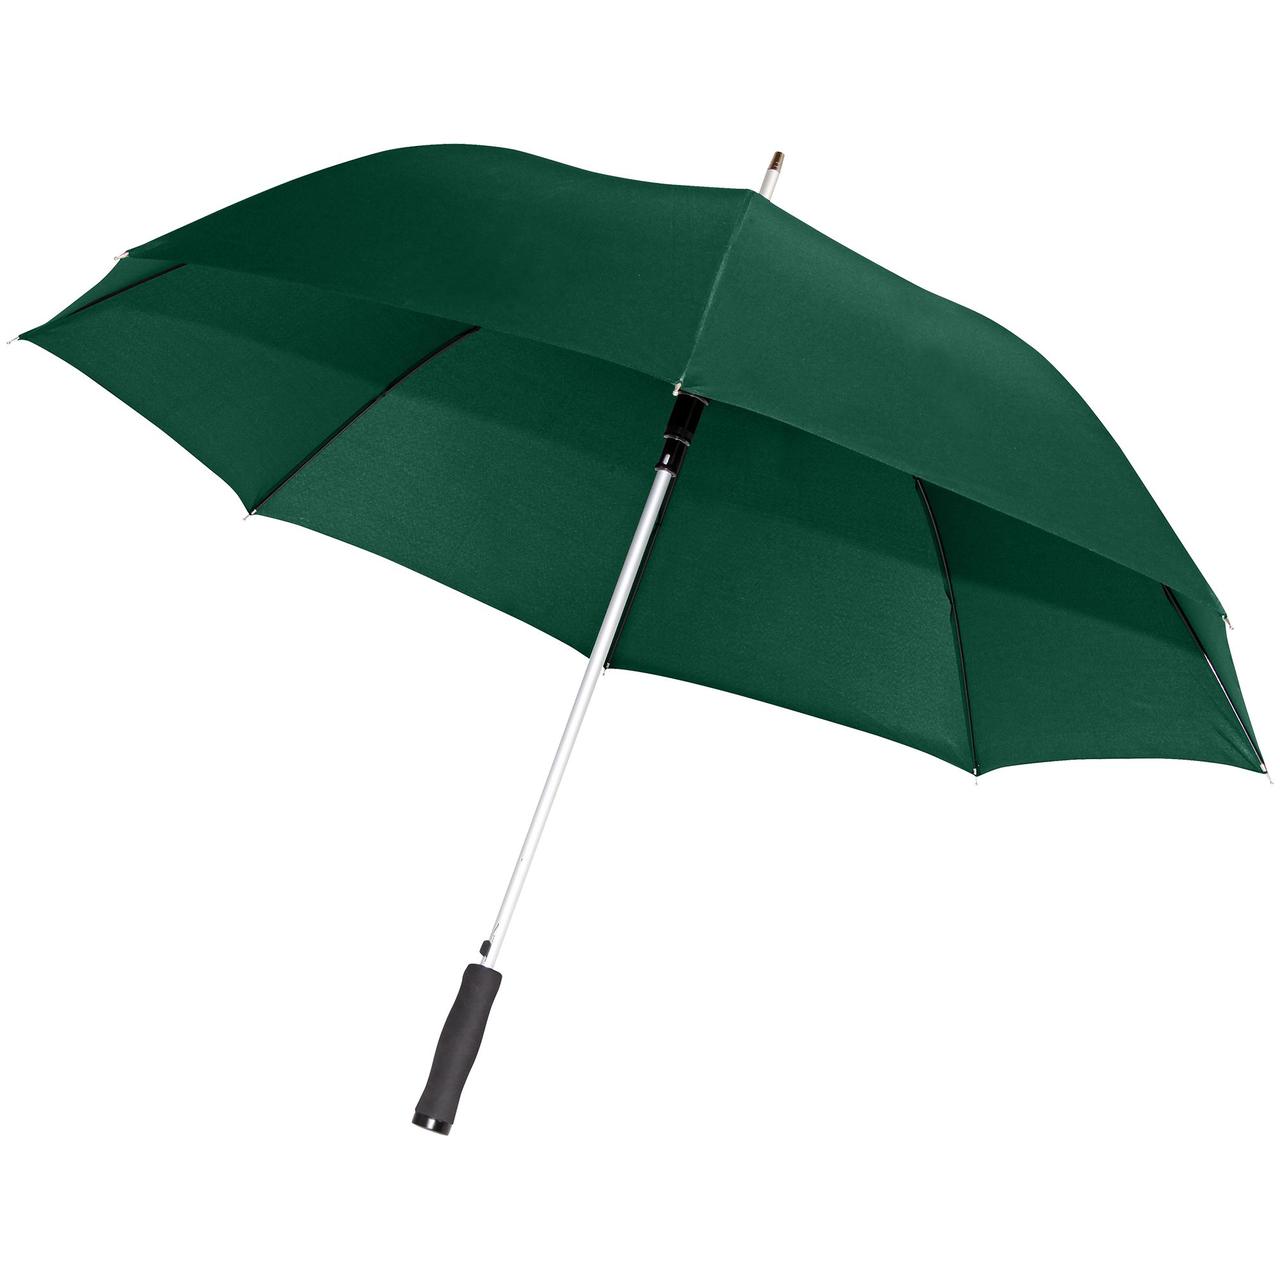 Зонт-трость Alu Golf AC, зеленый (артикул 11850.90), фото 1